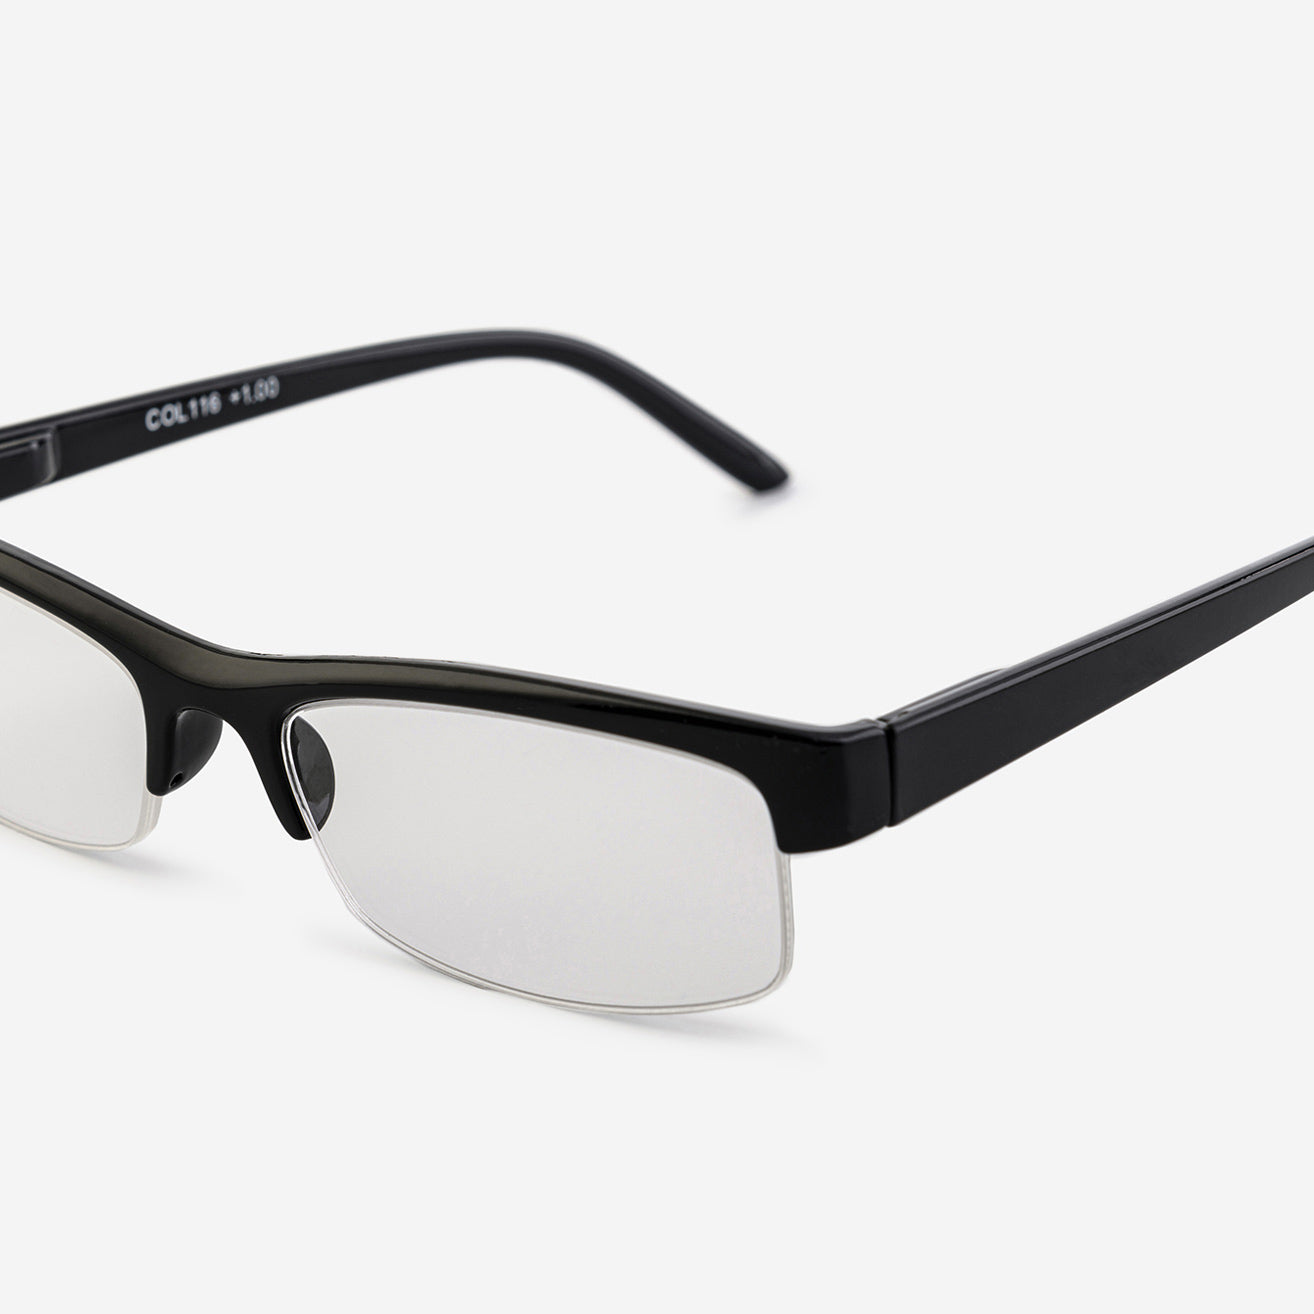 Black half-rim reading glasses